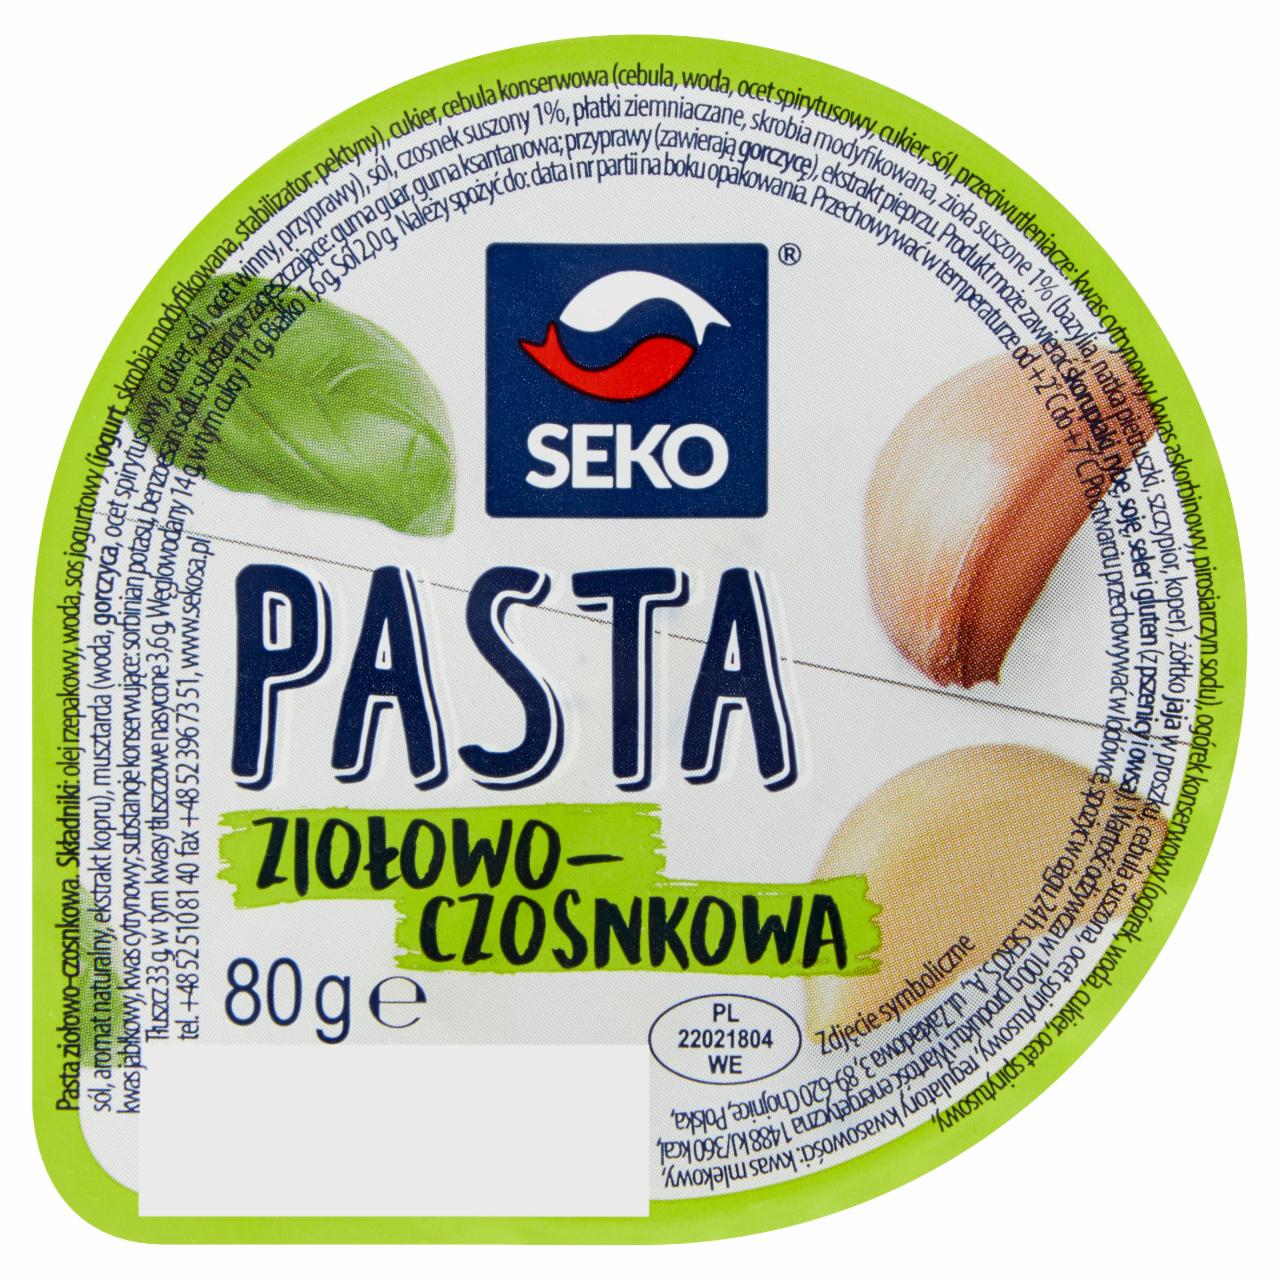 Zdjęcia - Seko Pasta ziołowo-czosnkowa 80 g